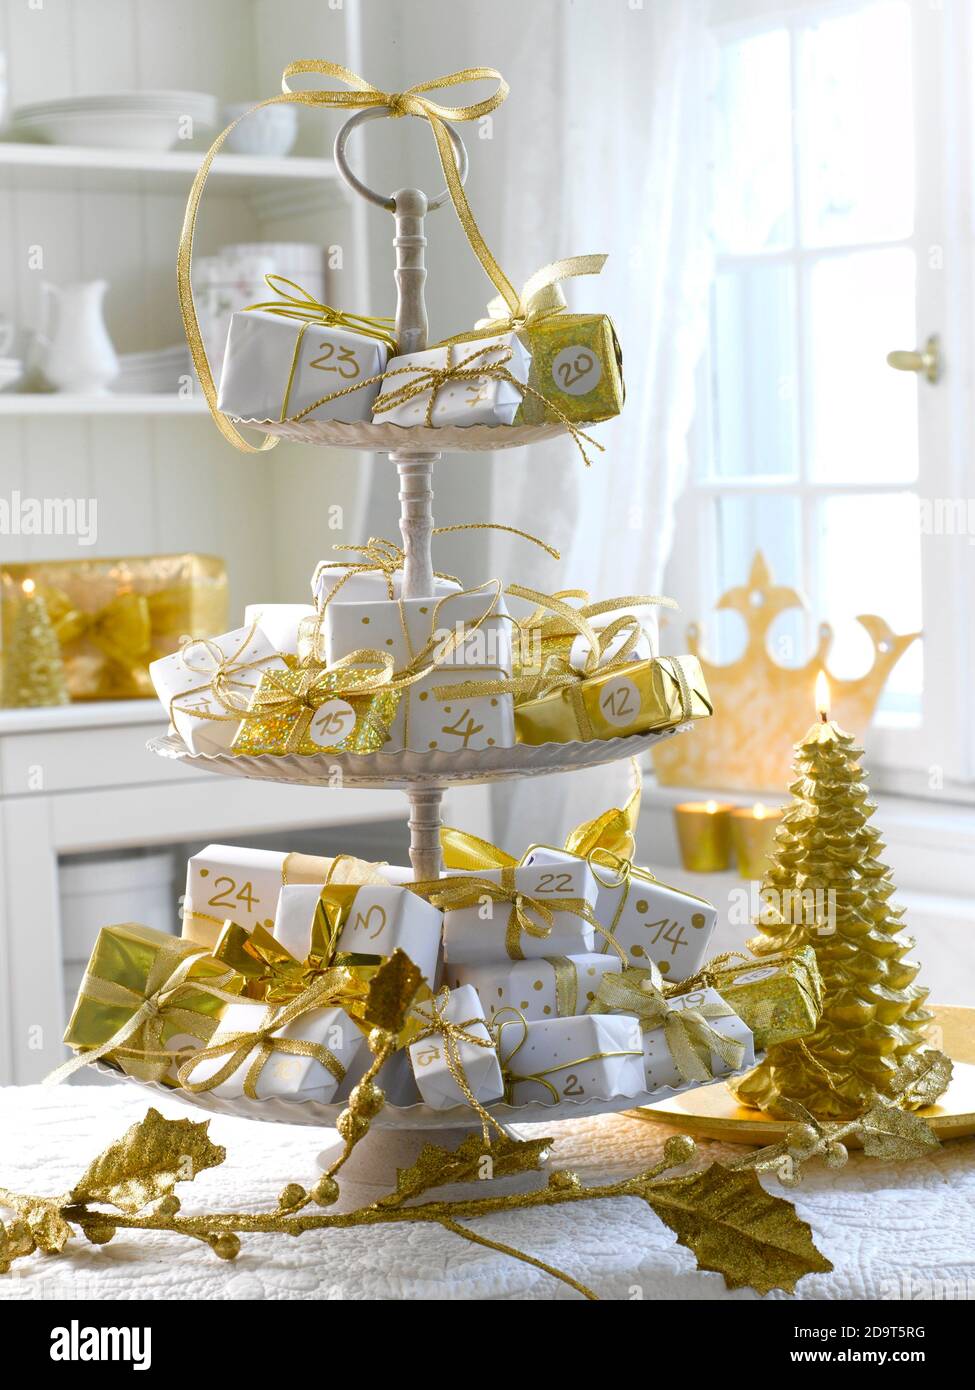 Adventskalender: Etagere with golden Christmas gifts UK VERWENDEN SIE  NUR/E-MAIL, UM ANDERE RECHTE ZU KLÄREN Stockfotografie - Alamy